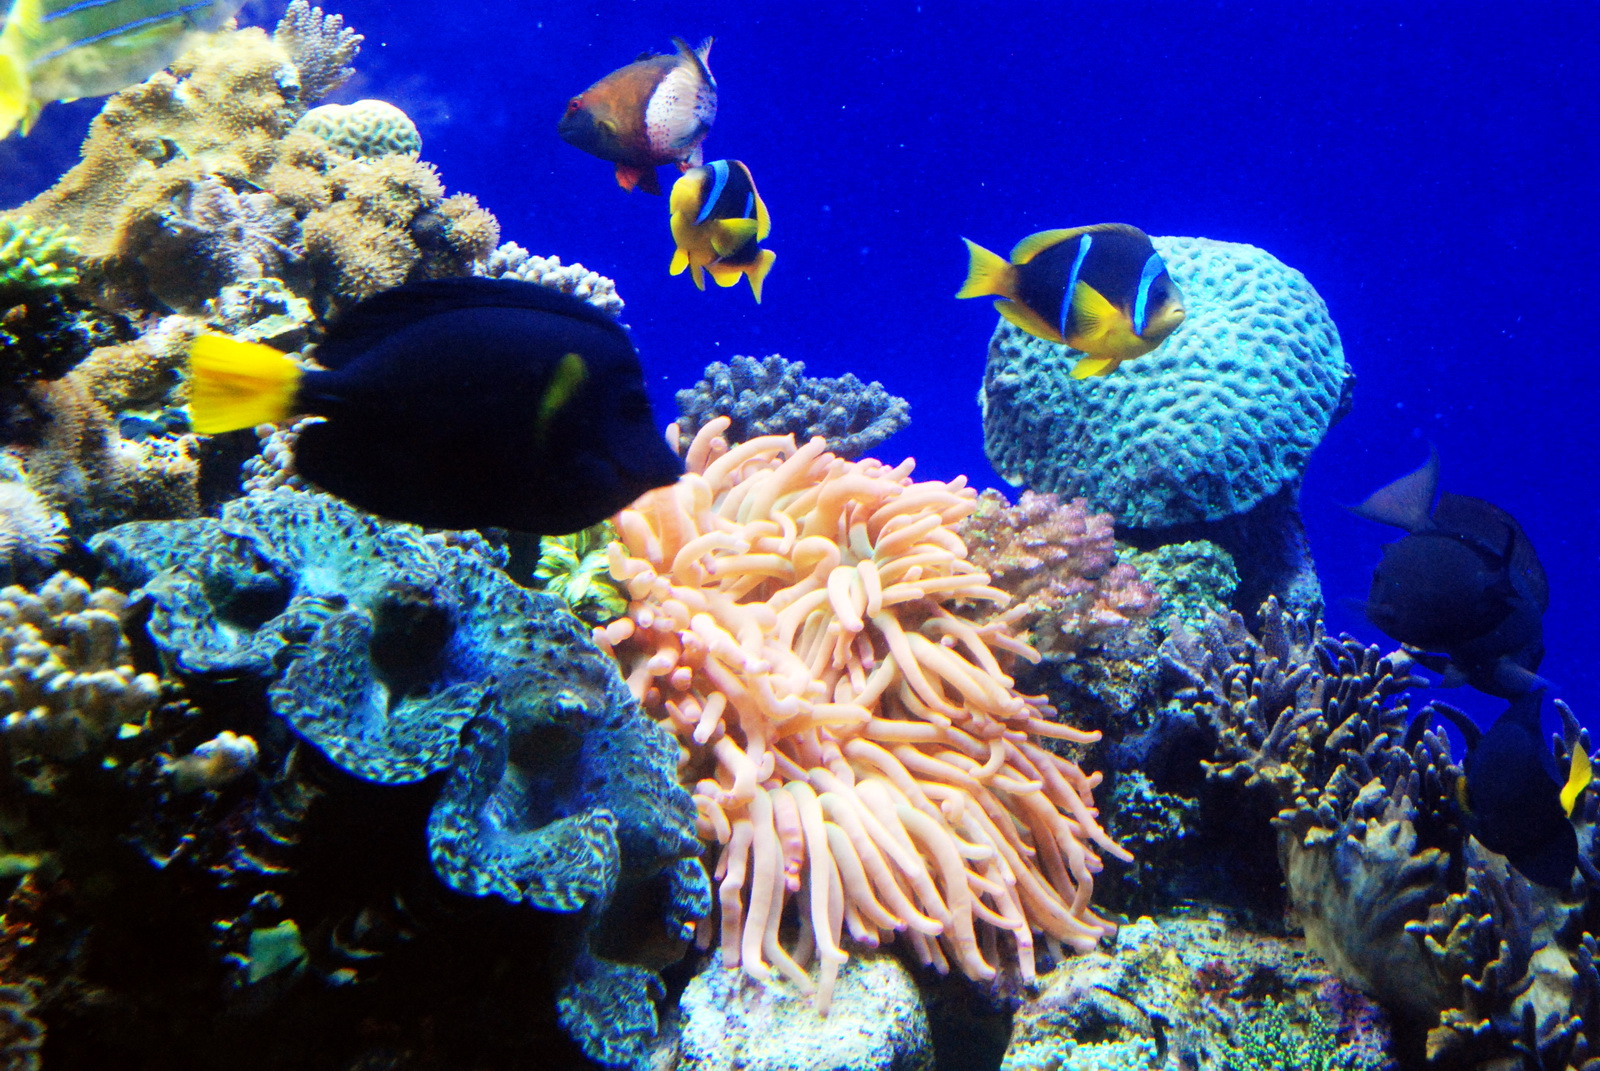 אילת - אלמוגים, שושנות ים ודגים